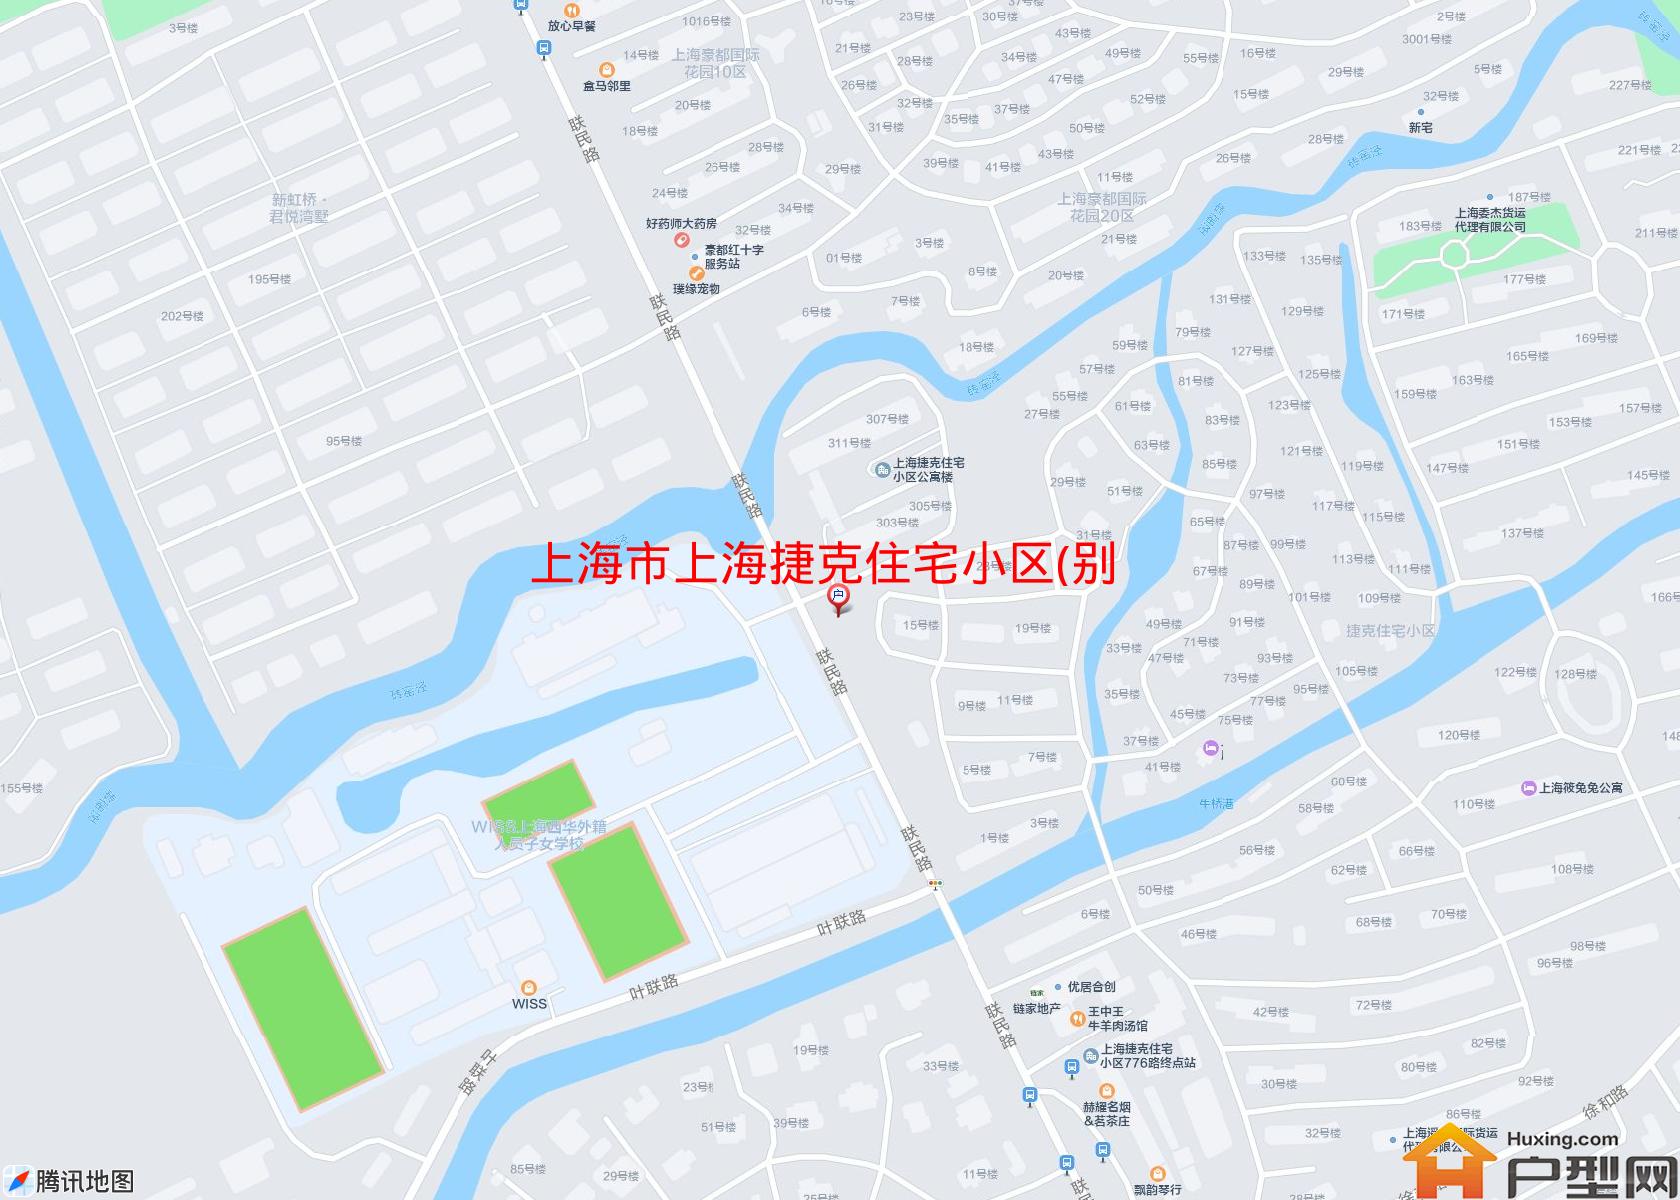 上海捷克住宅小区(别墅)小区 - 户型网